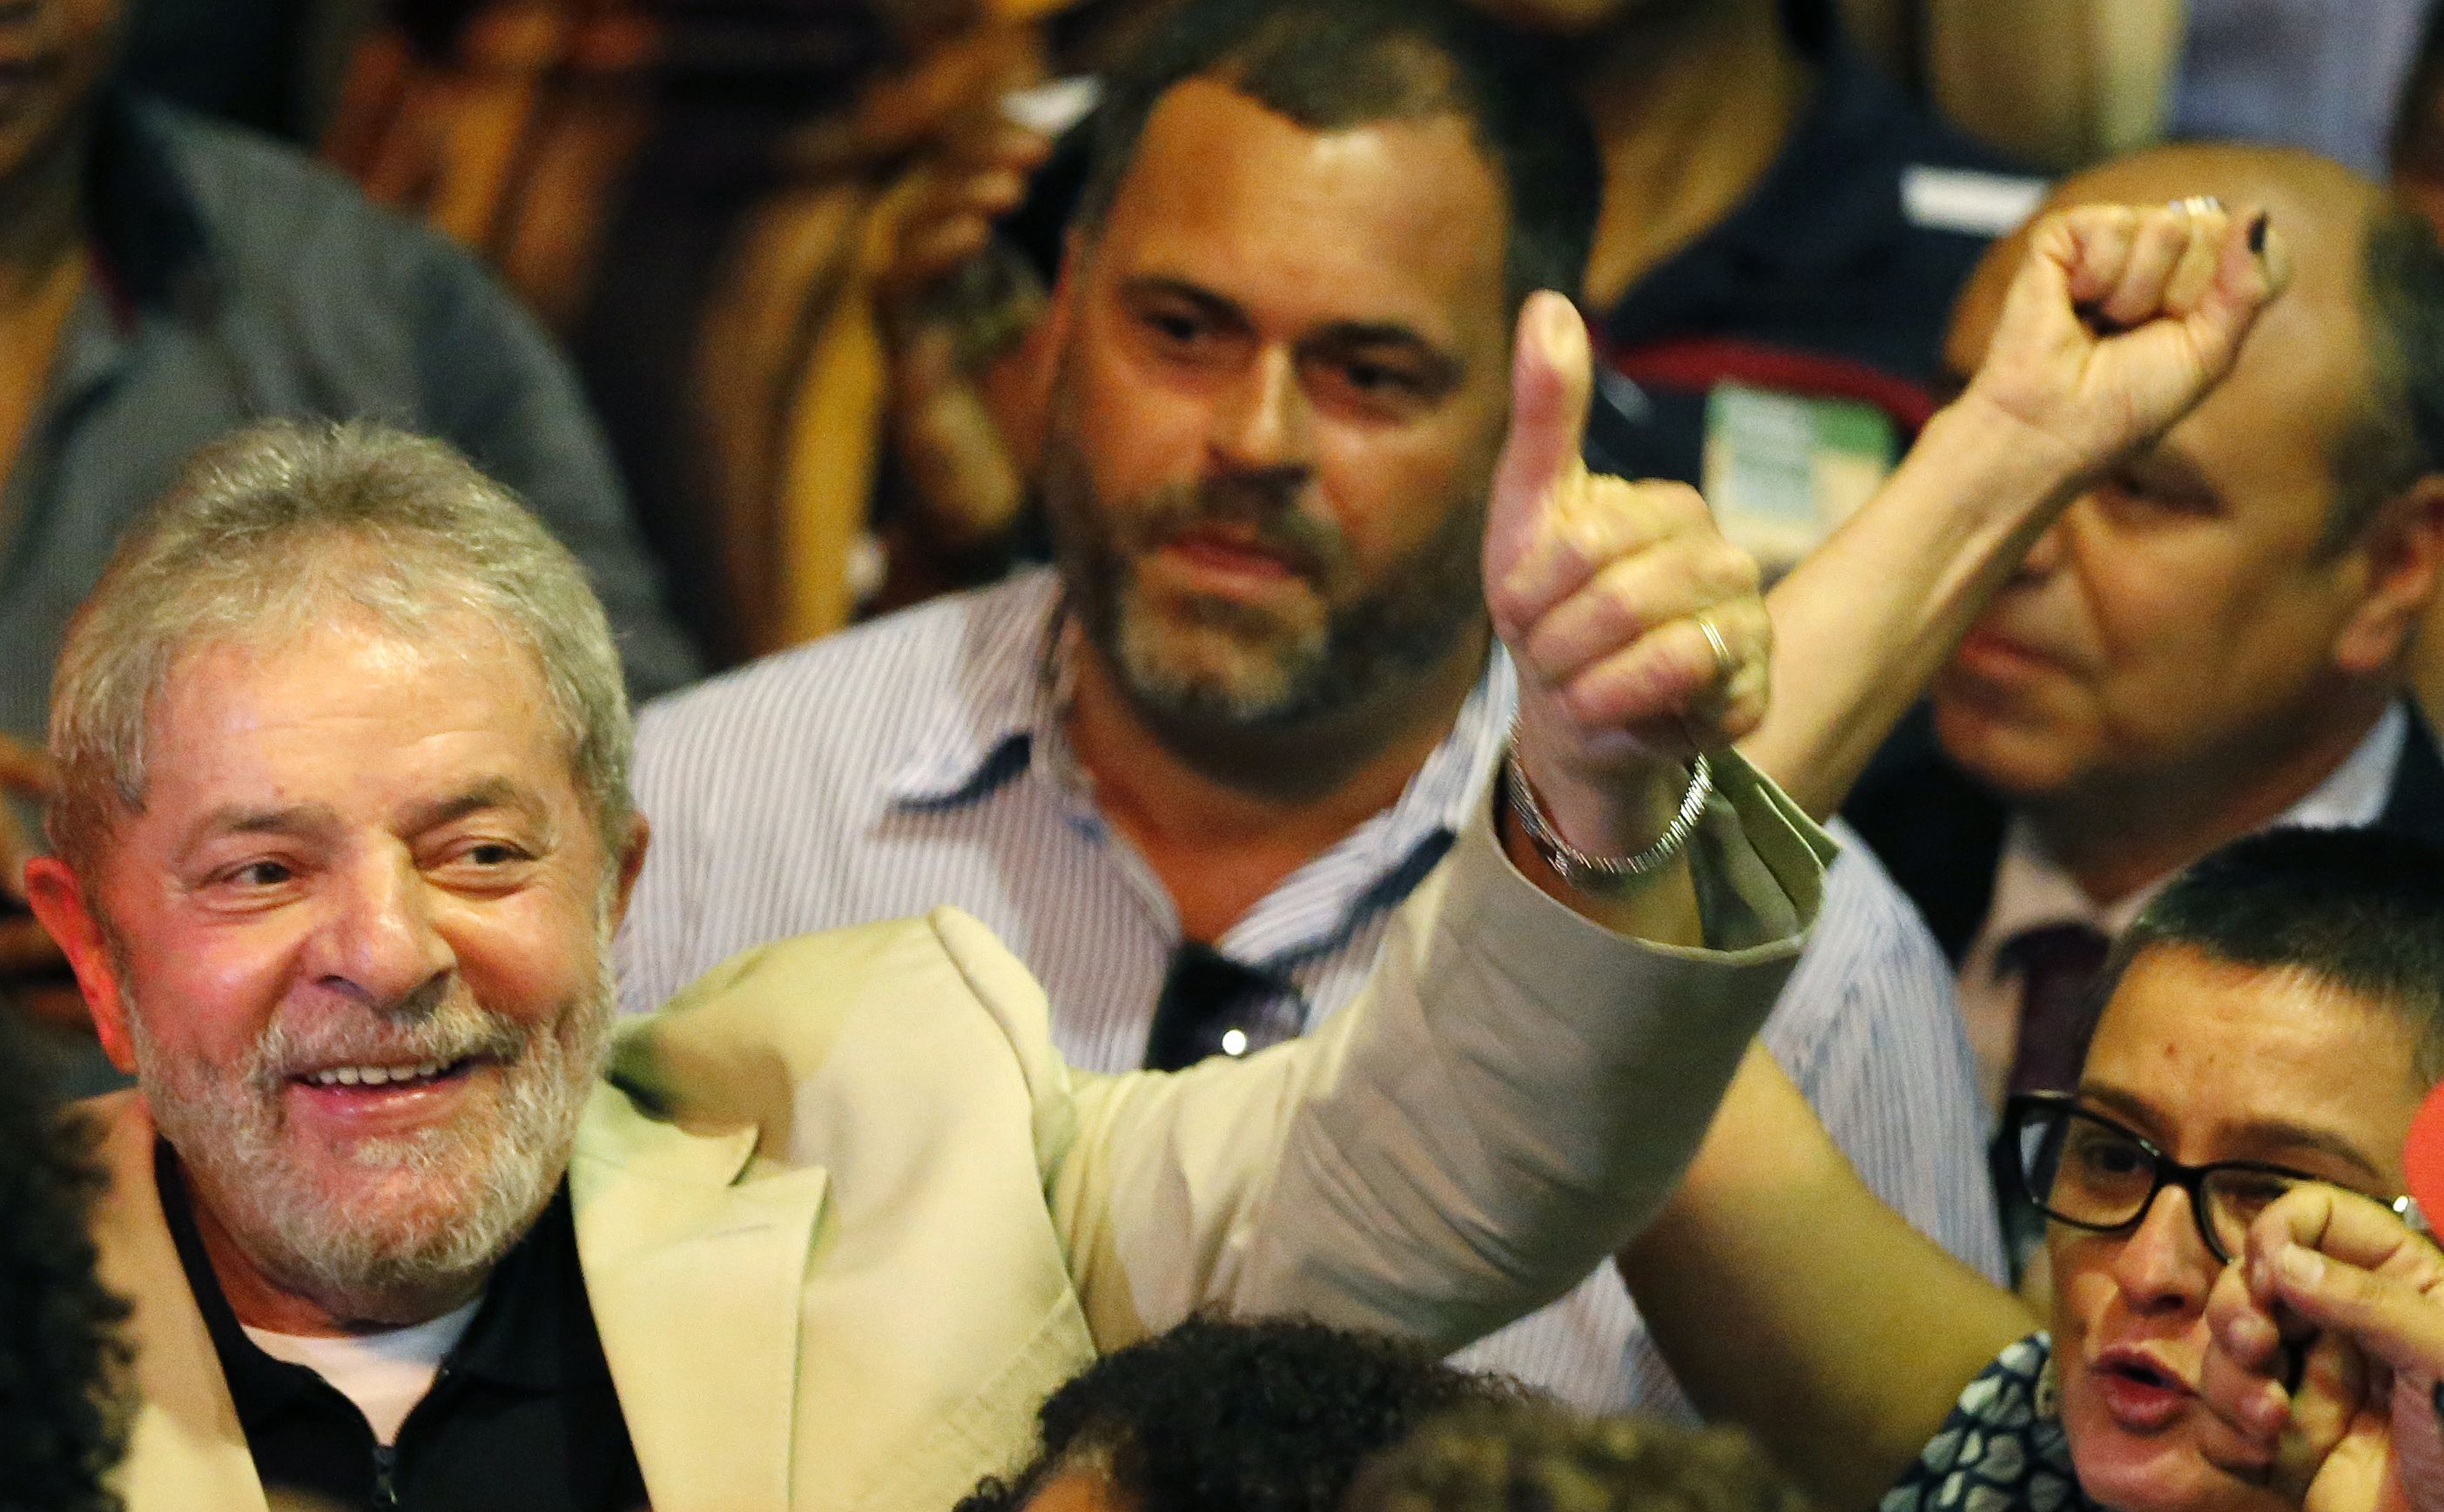 Lula enfatizó: “Quiero la paz y la democracia en Brasil, pero si quieren guerra, sé luchar también